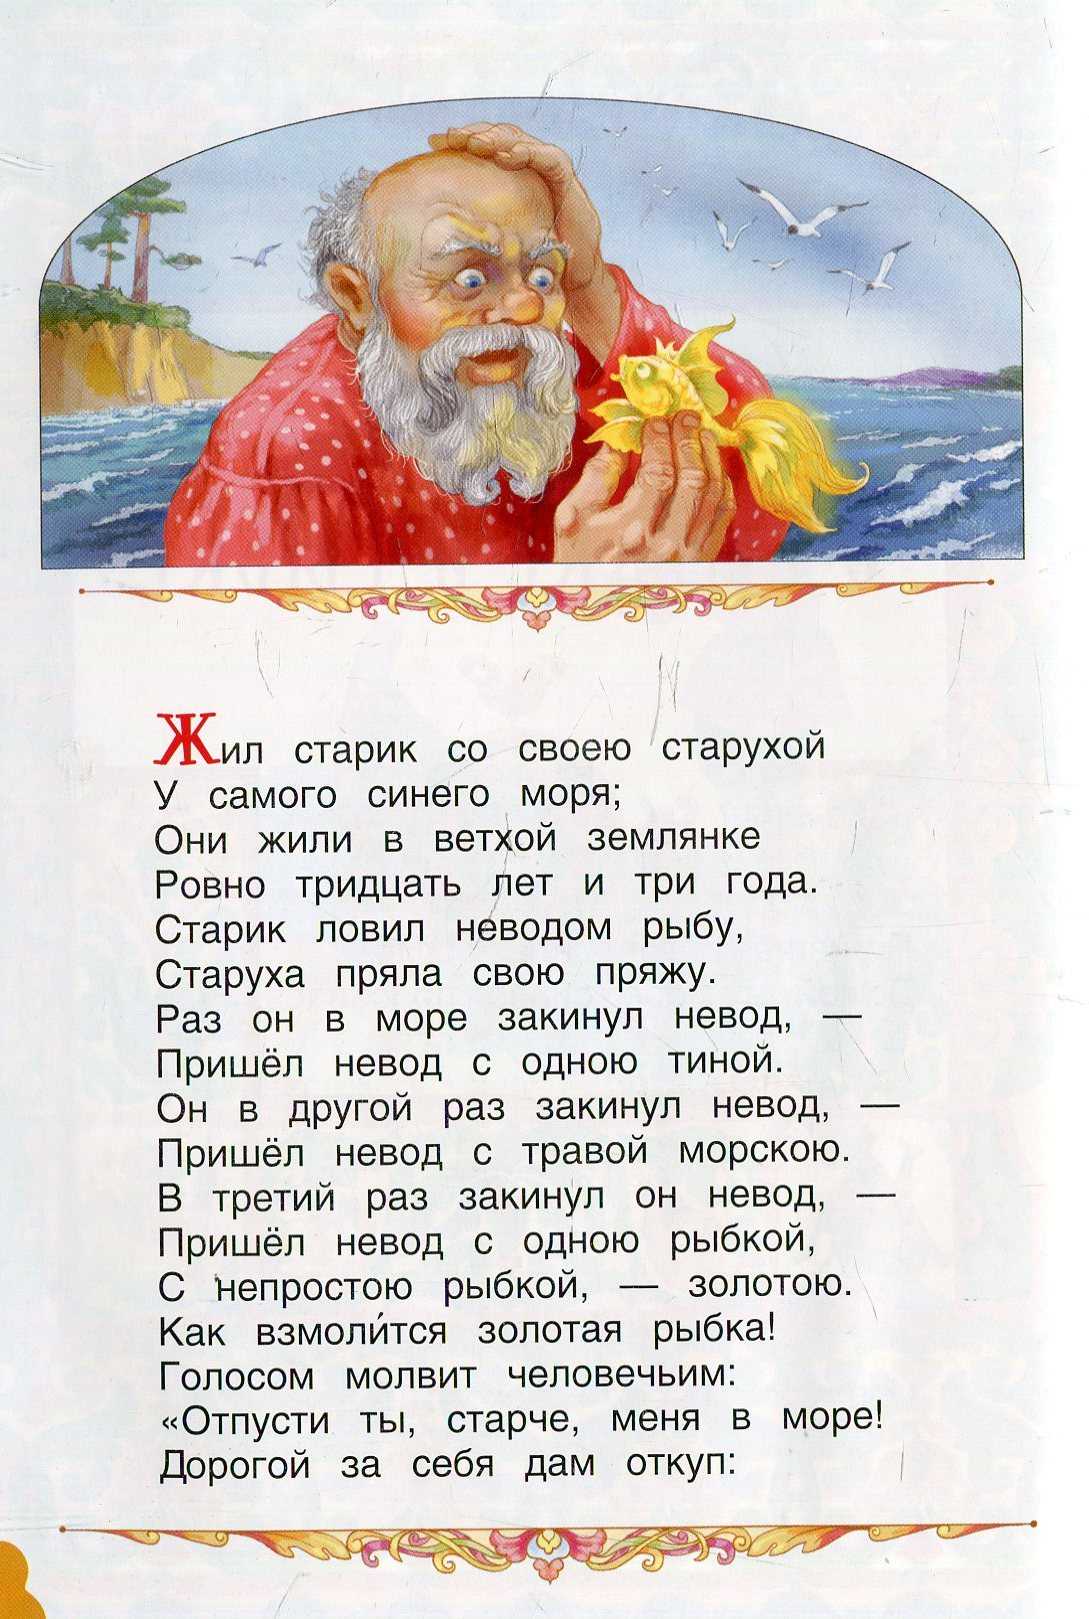 Сказки пушкина о рыбаке и золотой